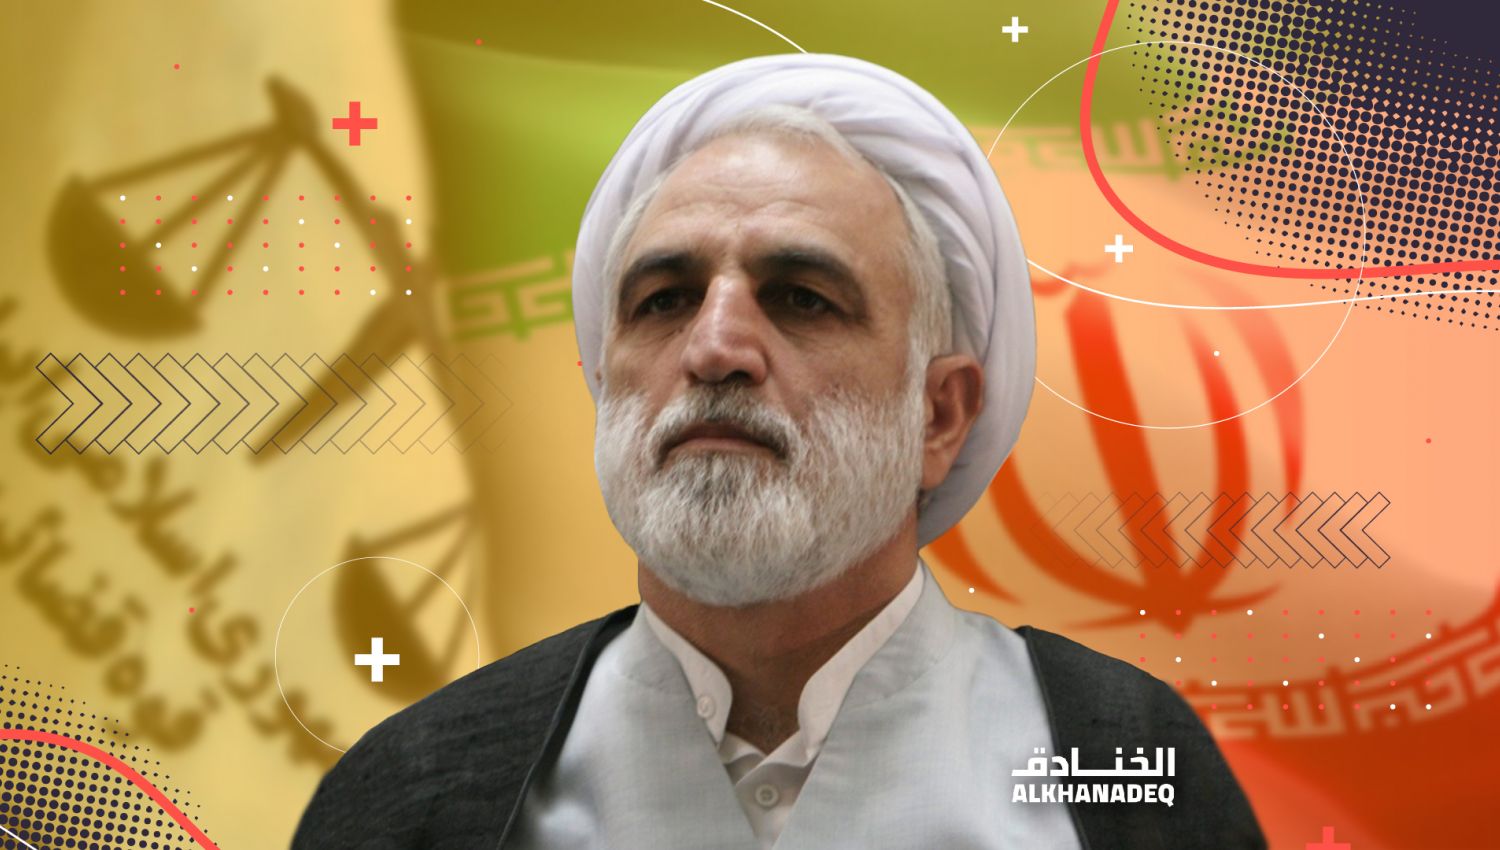 بعد تعيينه رئيسًا للسلطة القضائية في ايران... من هو الشيخ ايجئي